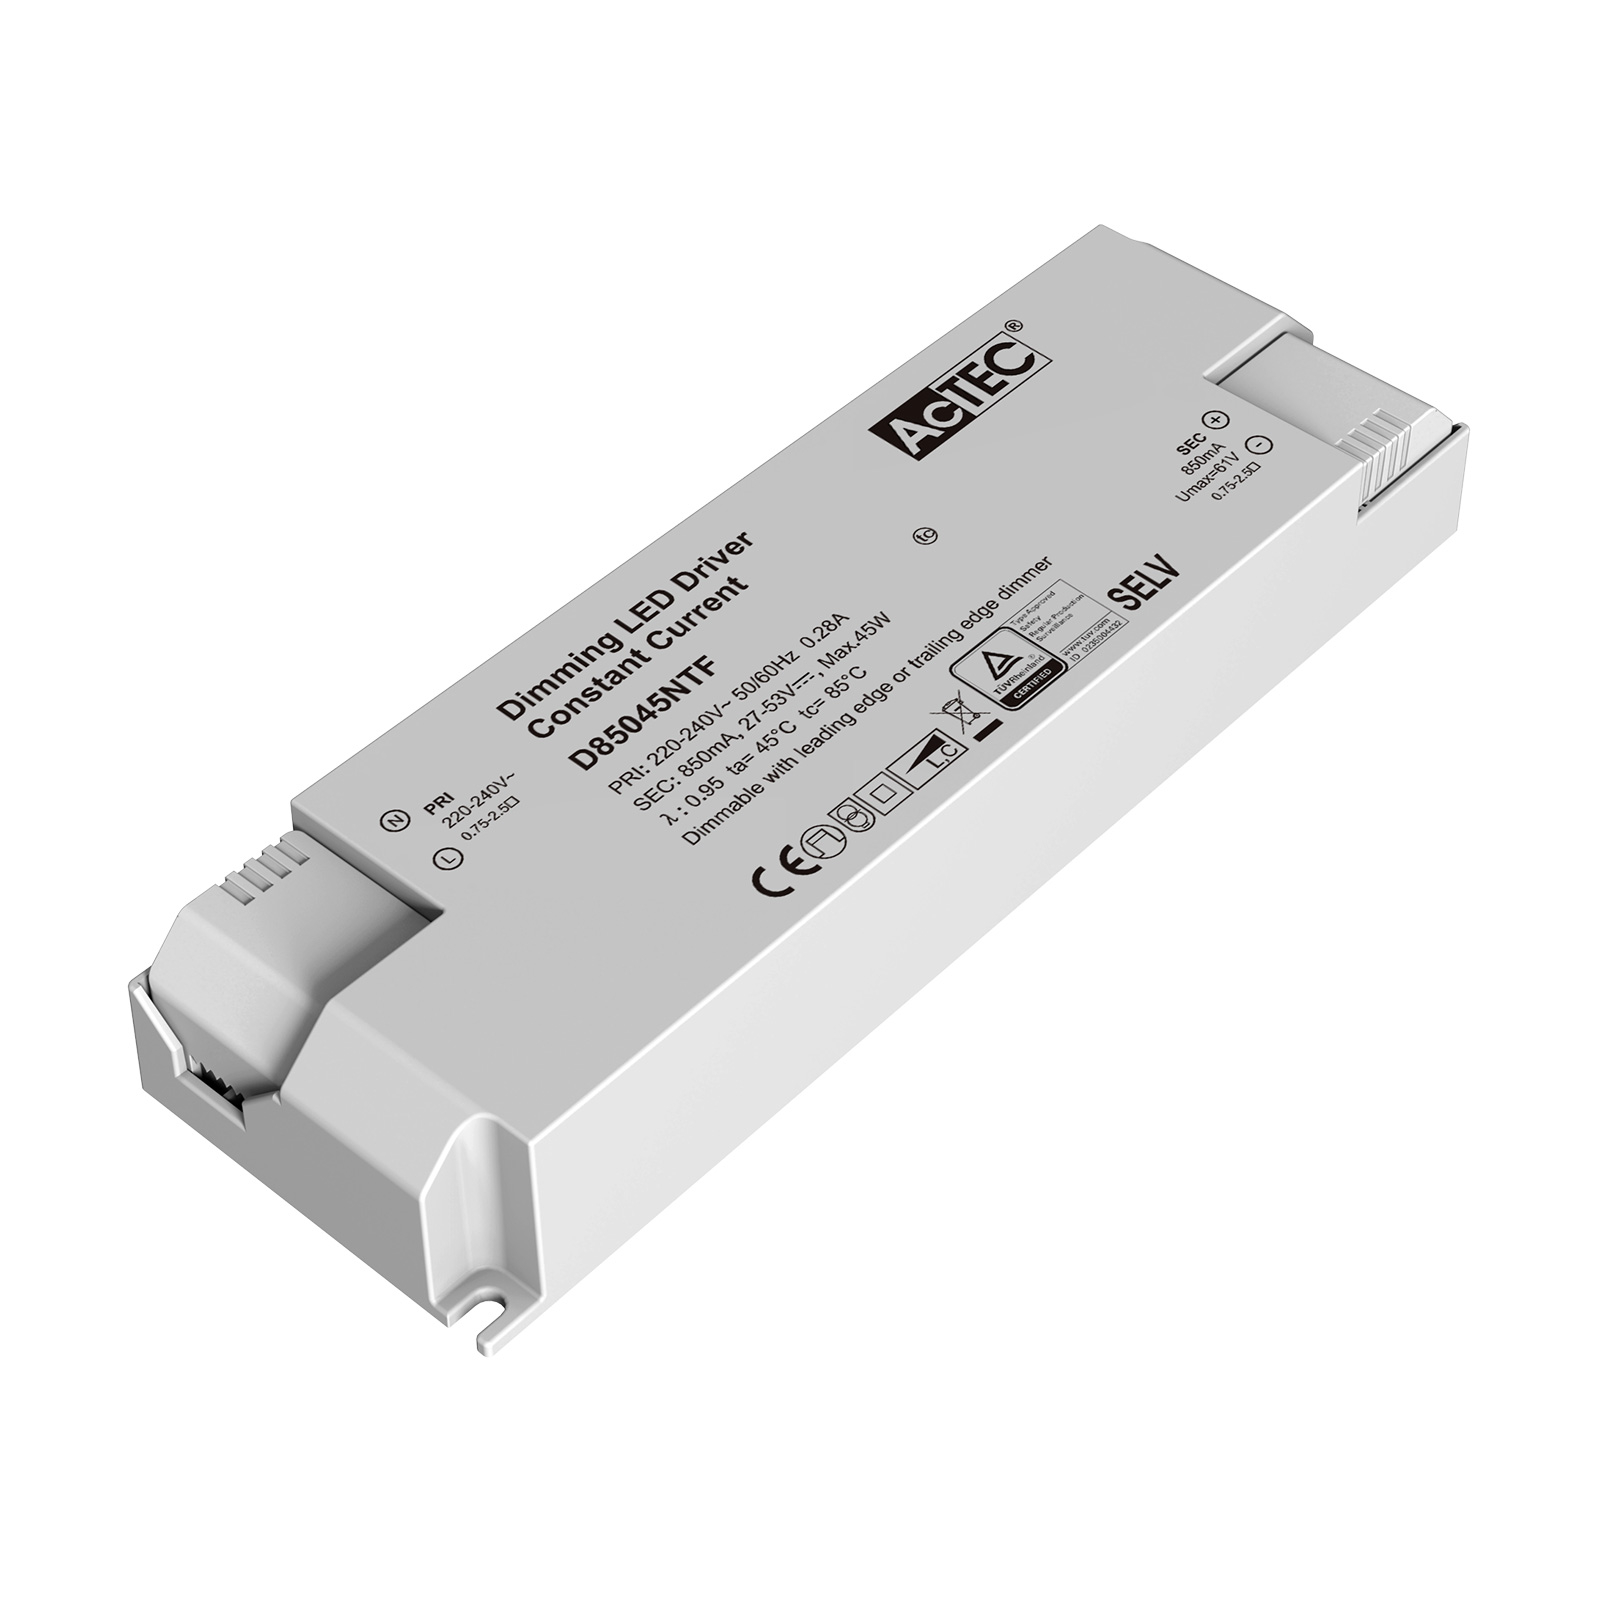 AcTEC Triac -LED-muuntaja CC maks. 45 W, 850 mA